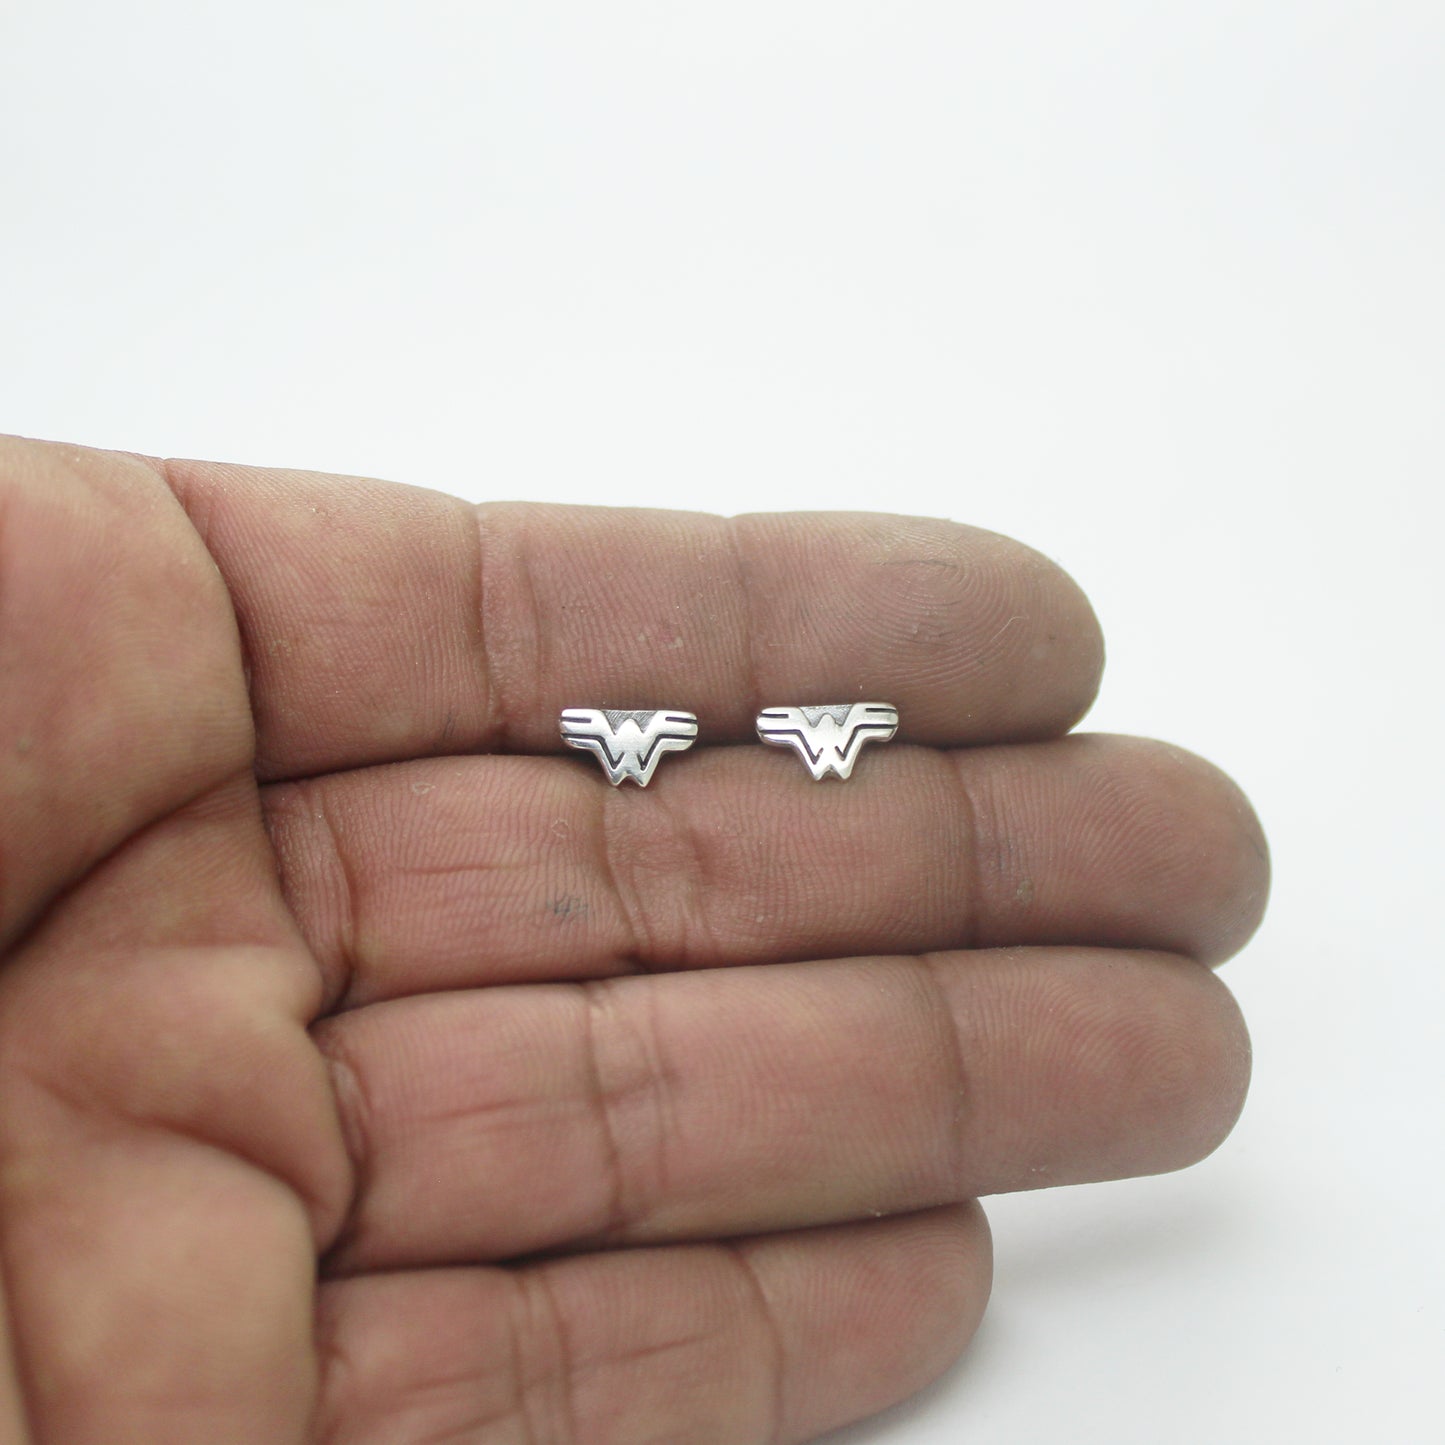 Wonder Woman mini earrings in 925 silver